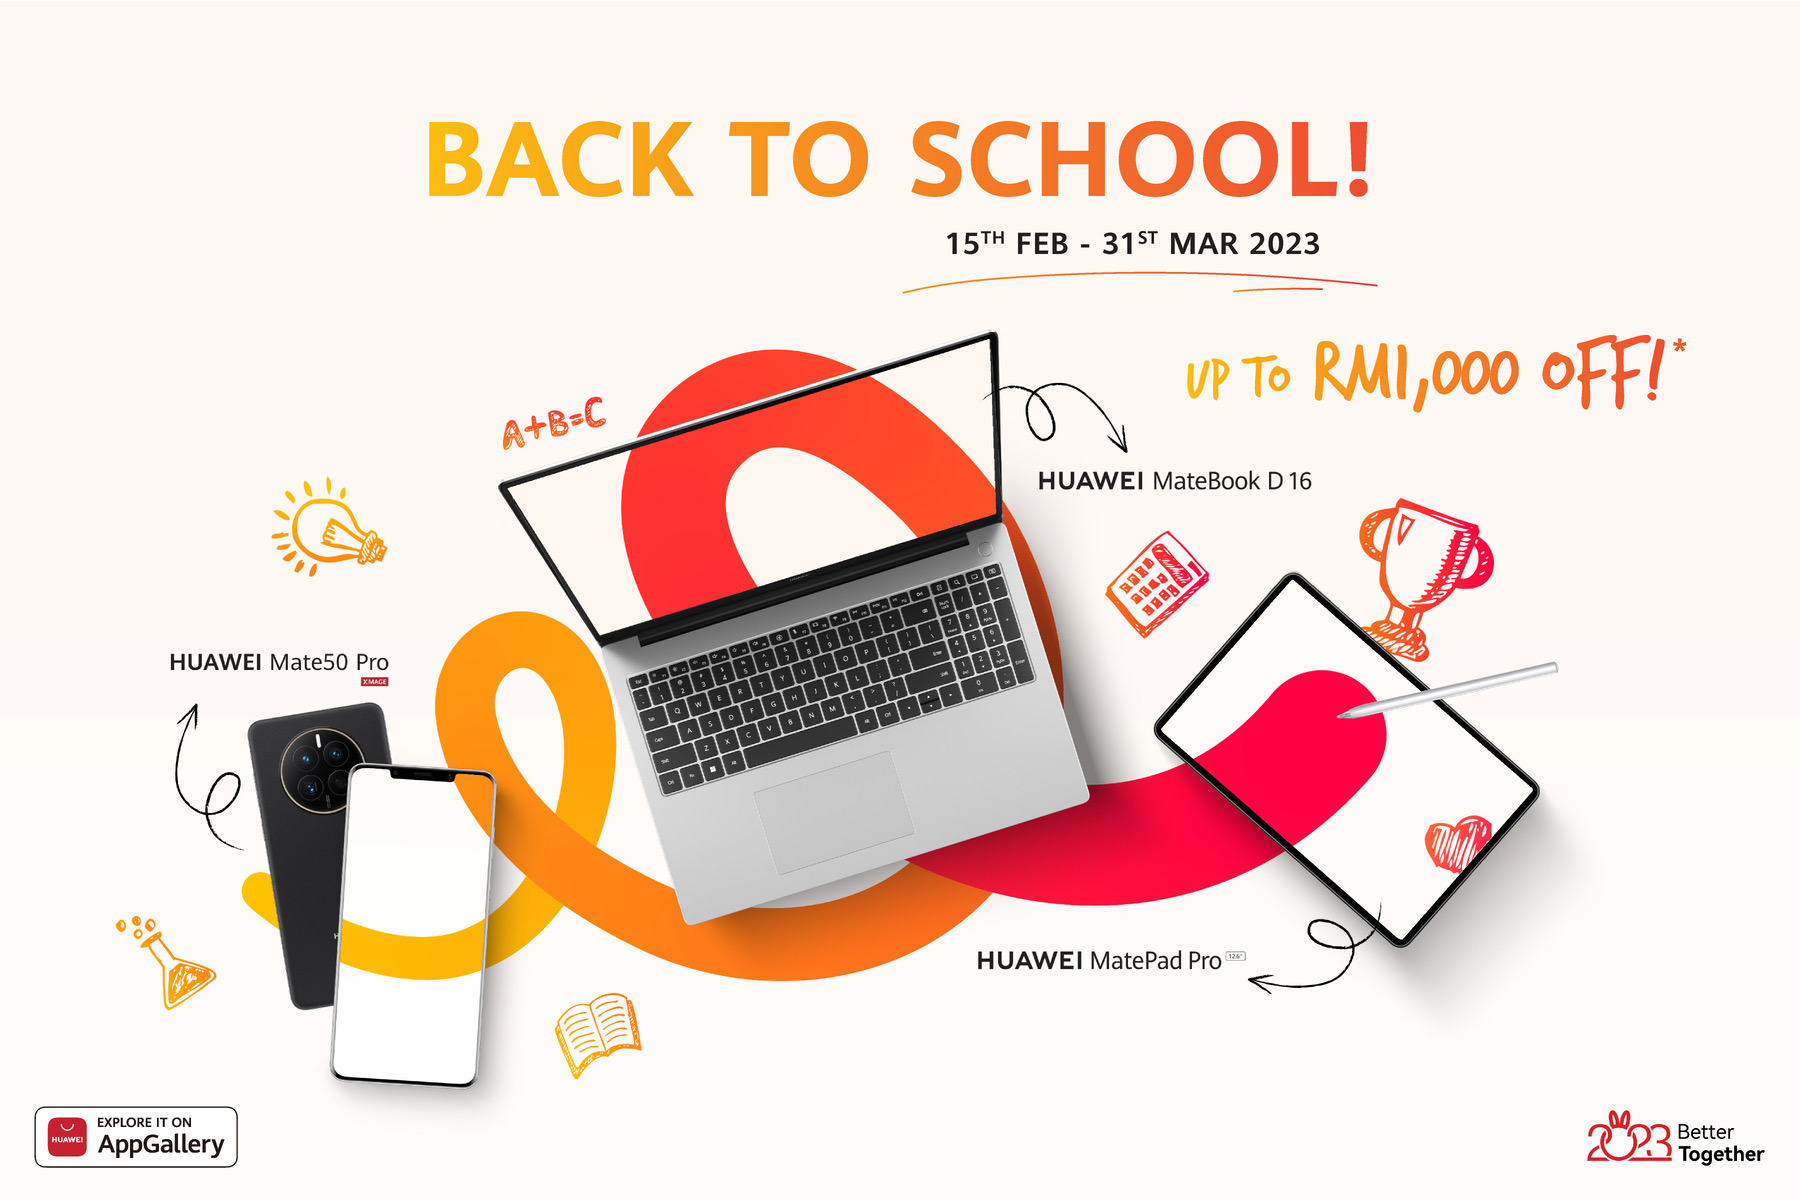 HUAWEI lancar promosi 'Back to School' dengan promosi menarik bagi tablet dan komputer riba 9